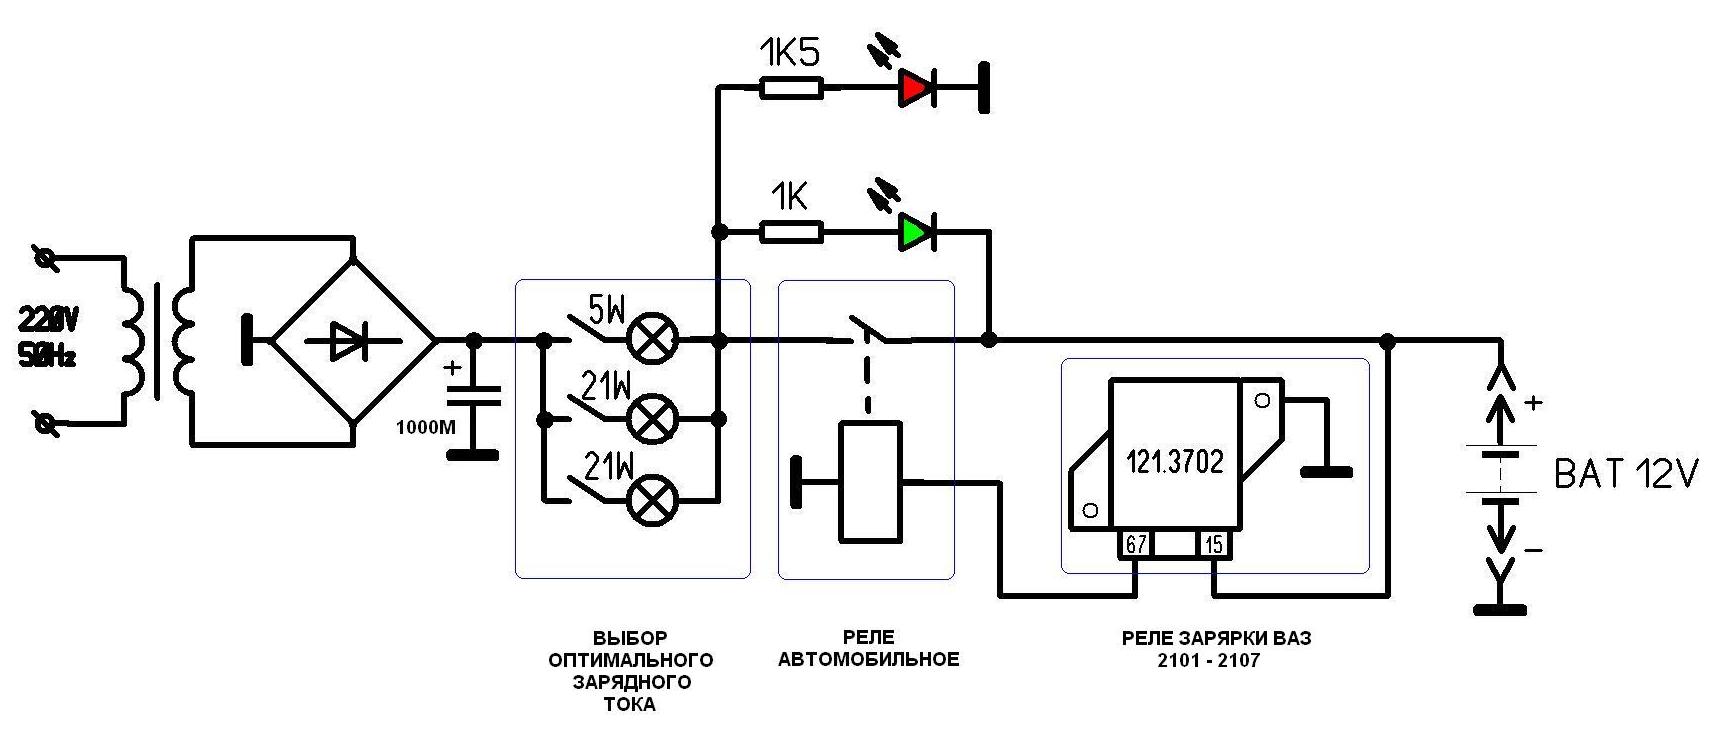 Самодельное зарядное устройство для автомобильного аккумулятора из бп атх, схемы